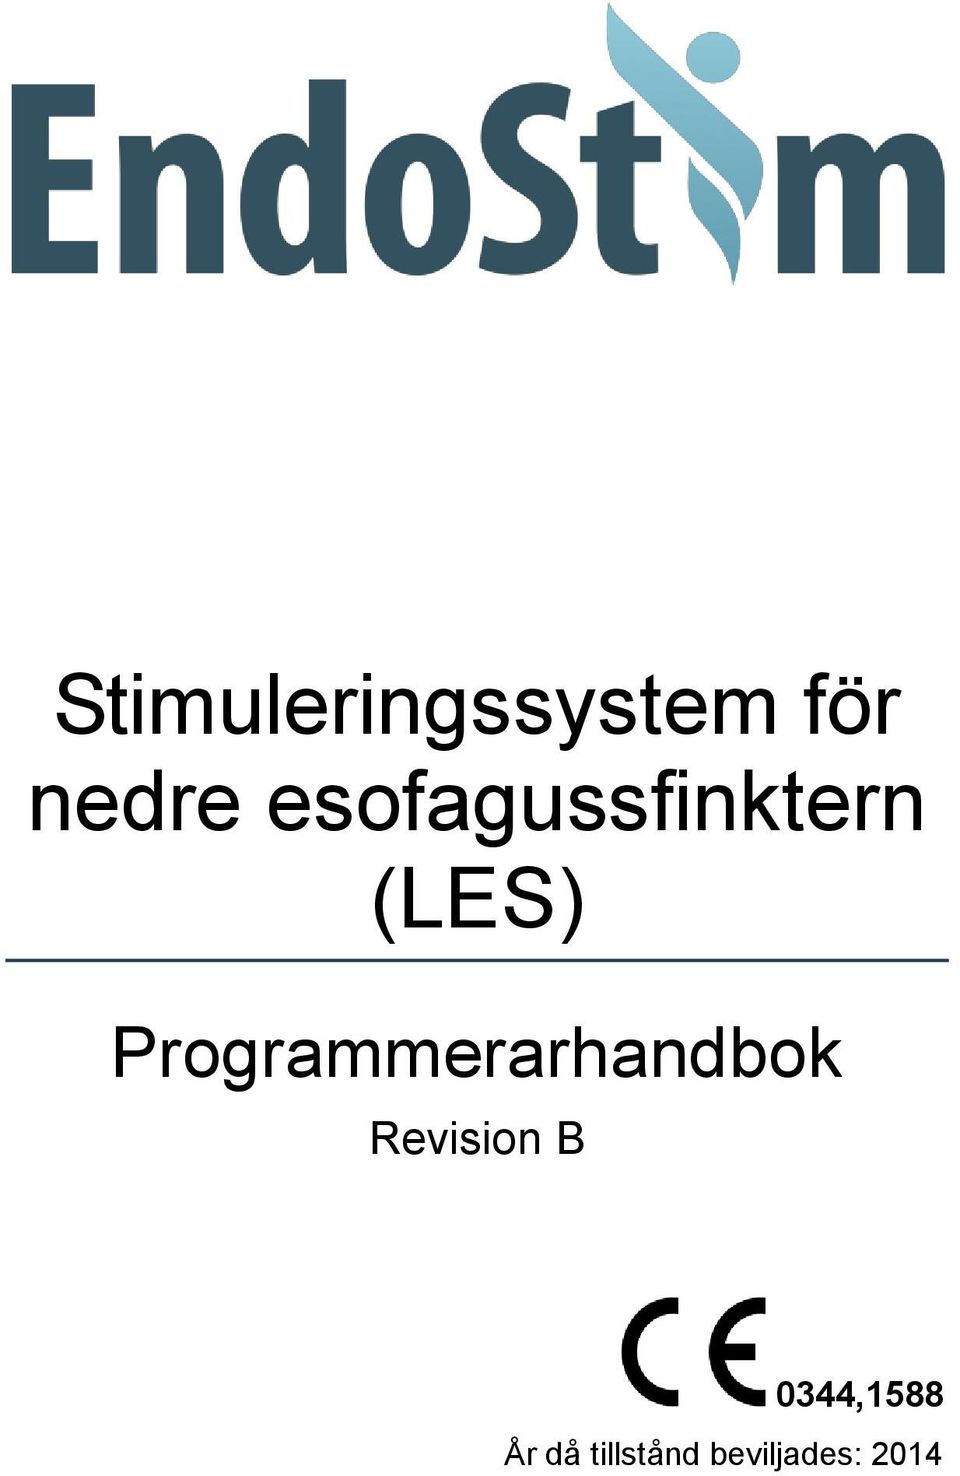 Programmerarhandbok Revision B